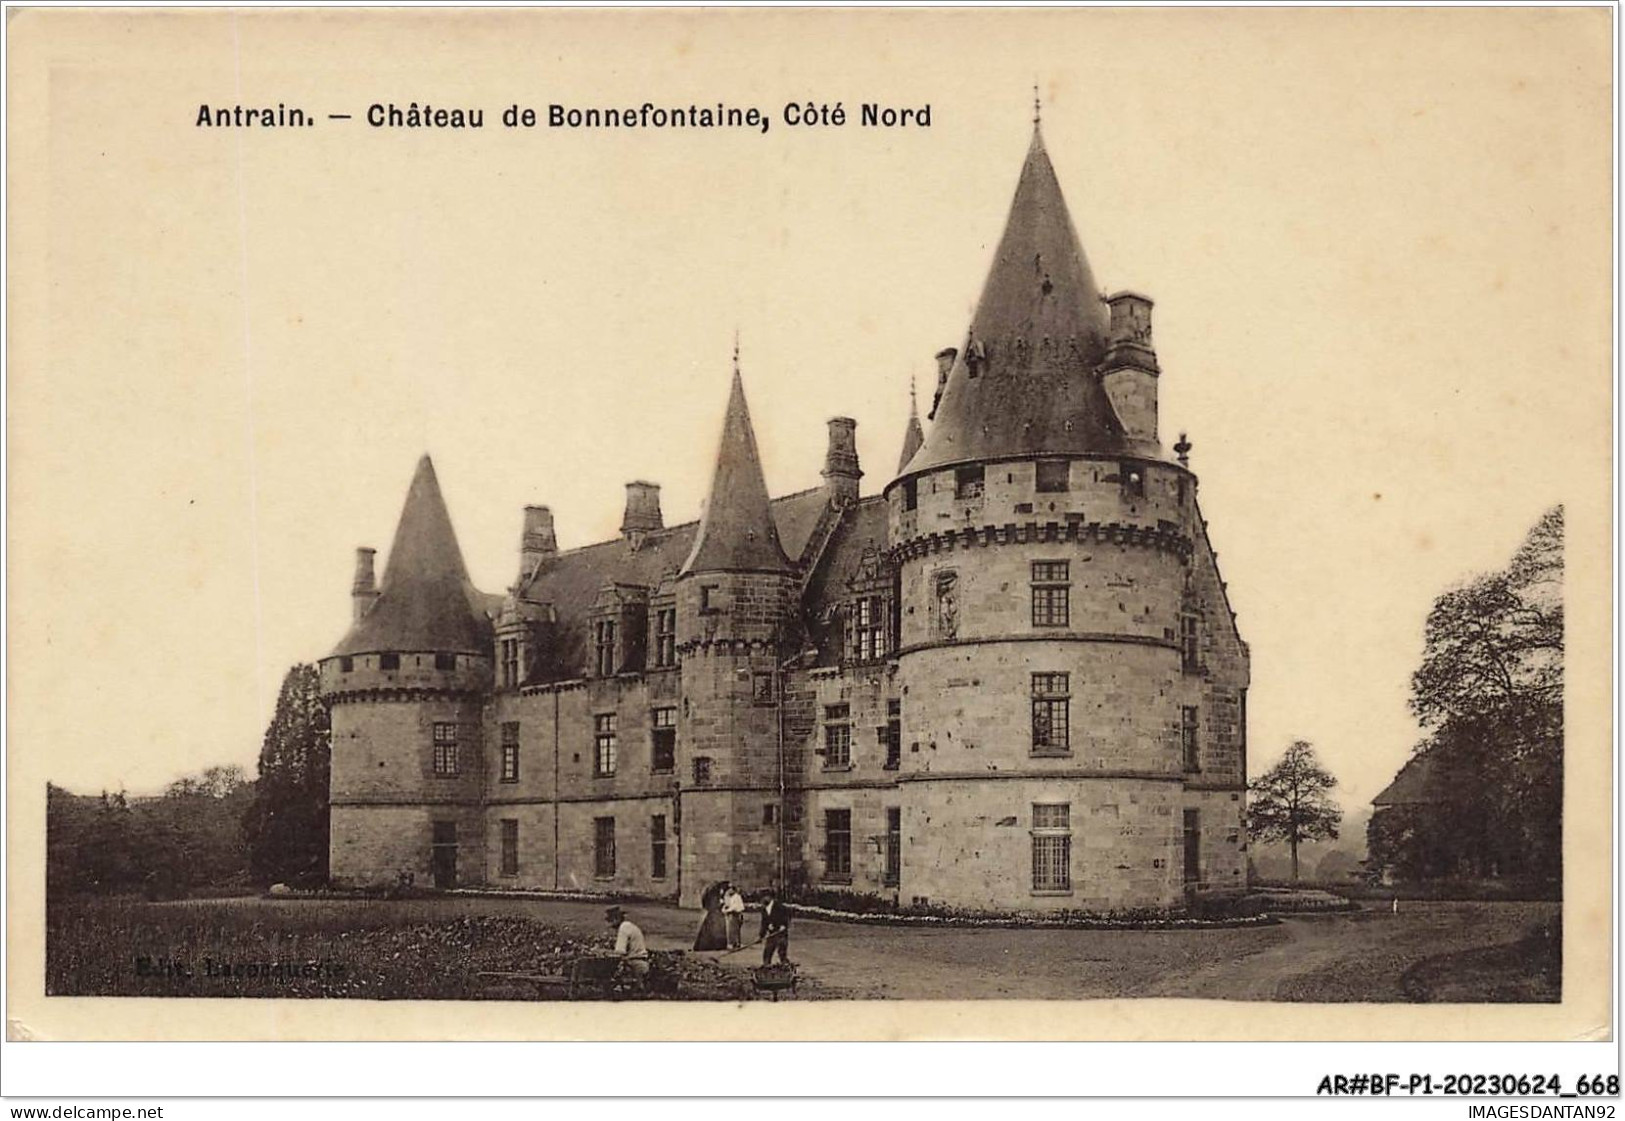 AR#BFP1-35-0335 - ANTRAIN - Chateau De Bonnefontaine, Coté Nord - Châteaugiron